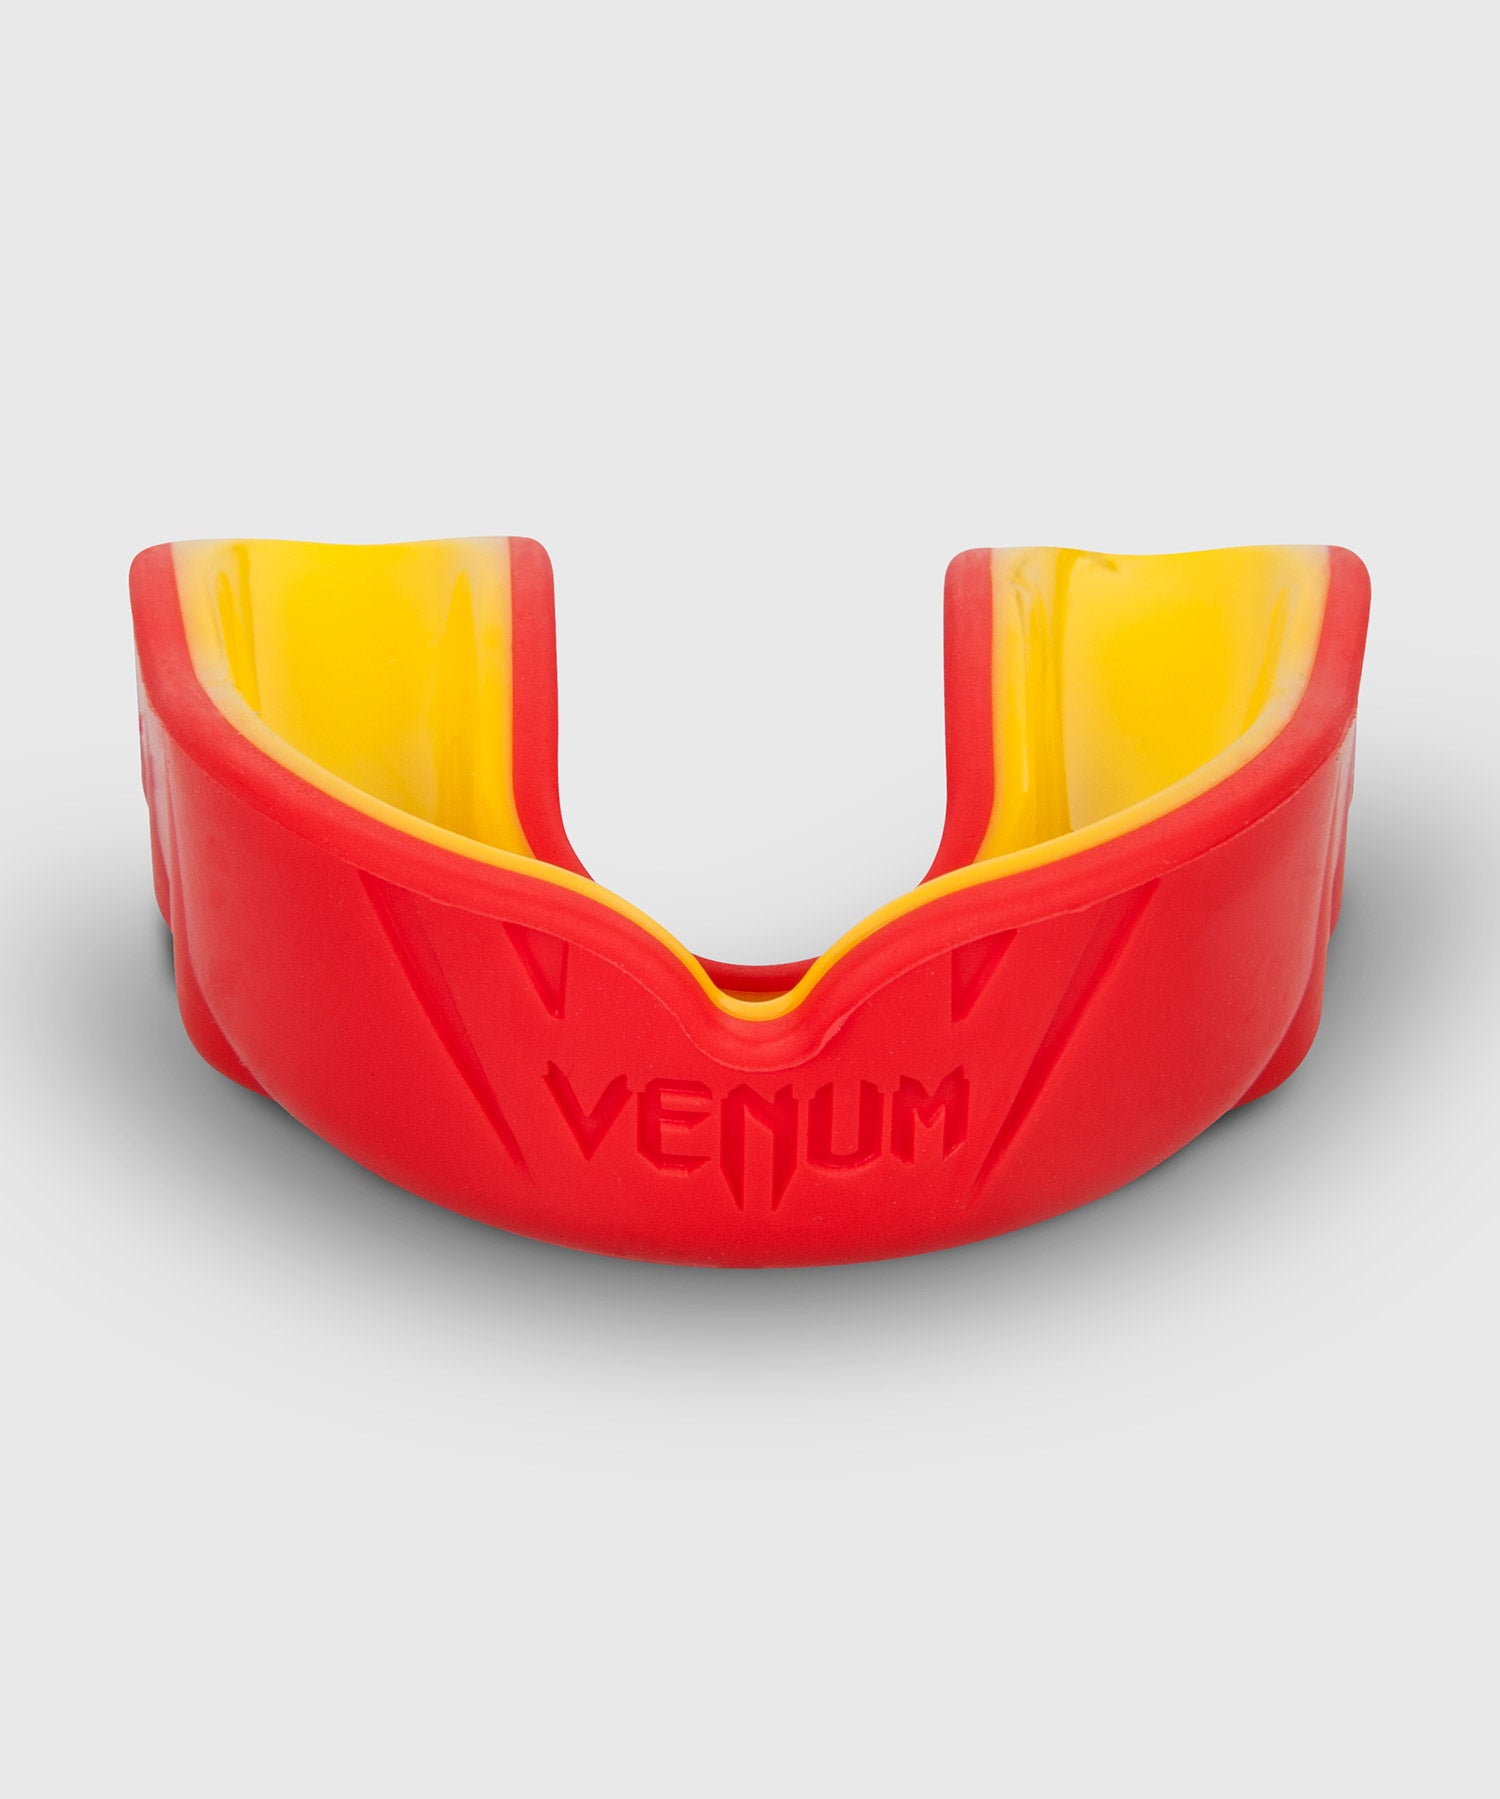 Protège-dents Venum Challenger - Rouge/Jaune – Venum France